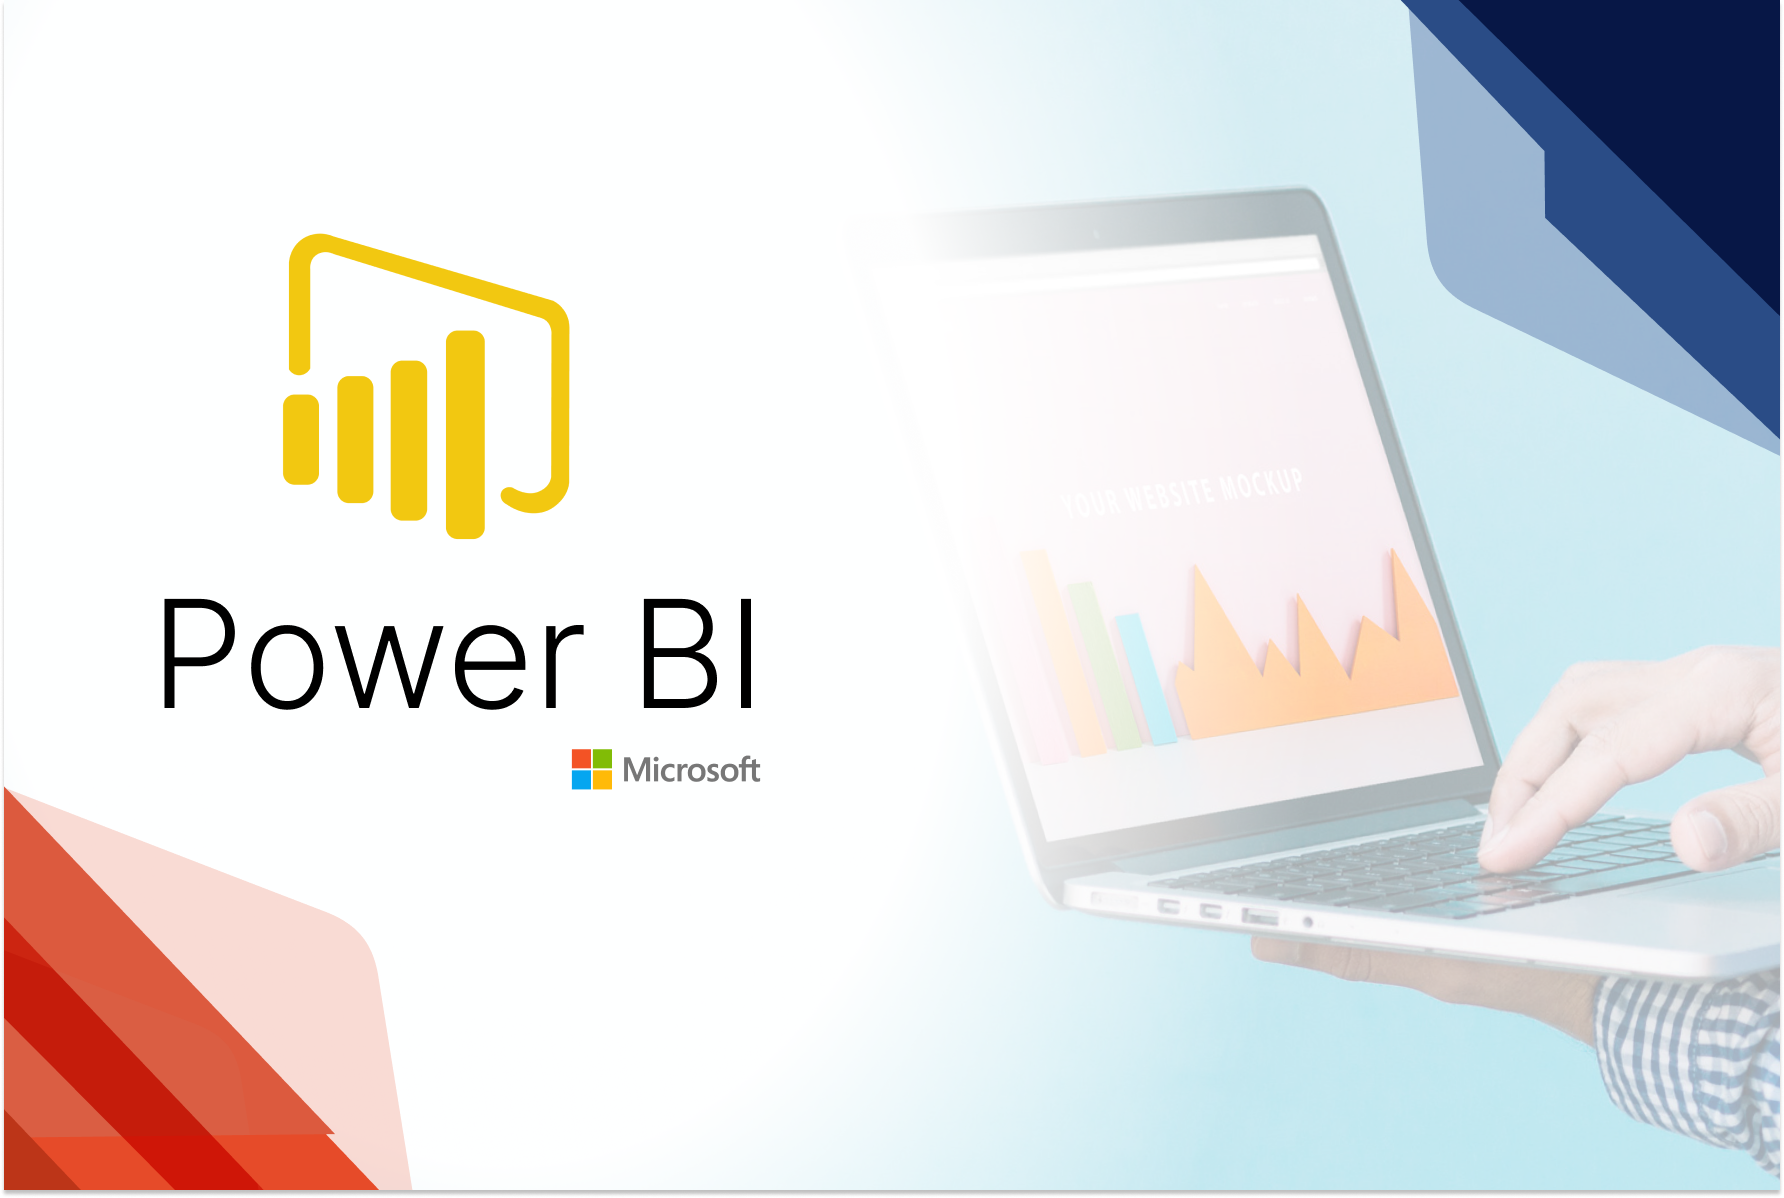  Análisis de datos con Power BI